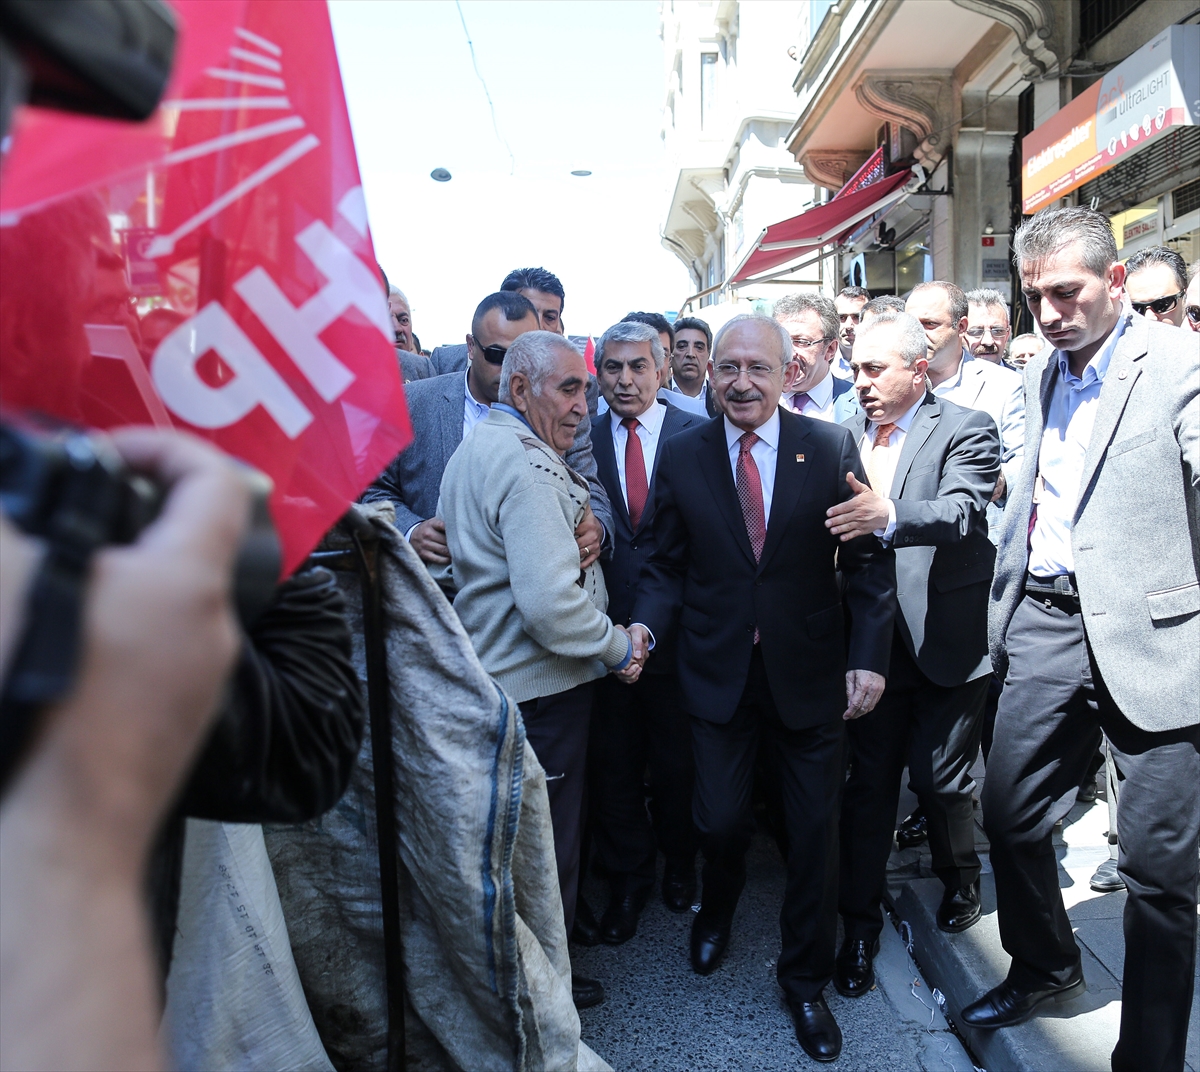 Kılıçdaroğlu'na ulaşmak isteyen işçilere koruma engeli